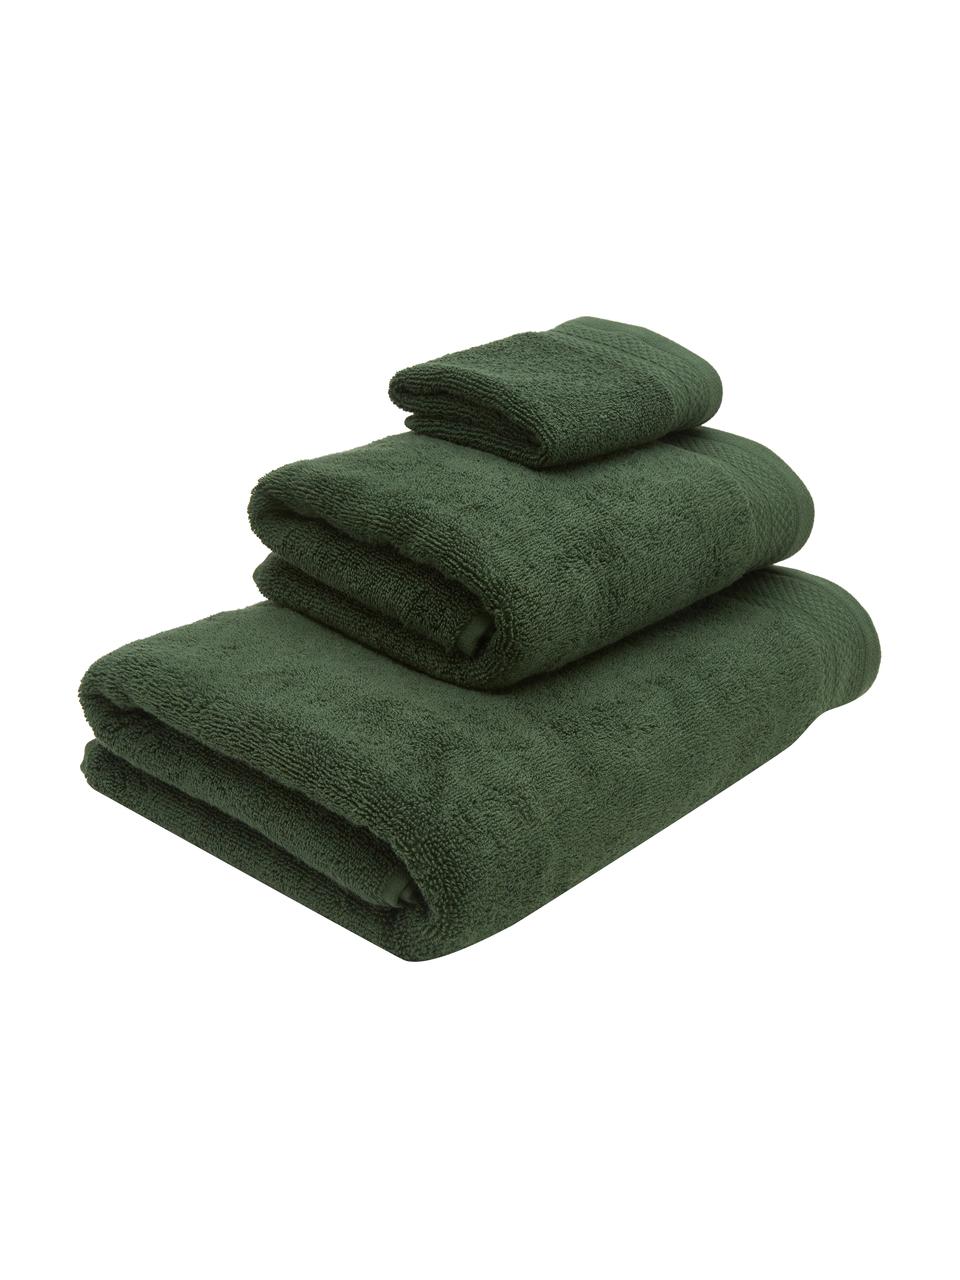 Set 3 asciugamani in cotone organico Premium, 100% cotone organico certificato GOTS (da GCL International, GCL-300517).
Qualità pesante, 600 g/m², Verde, Set in varie misure